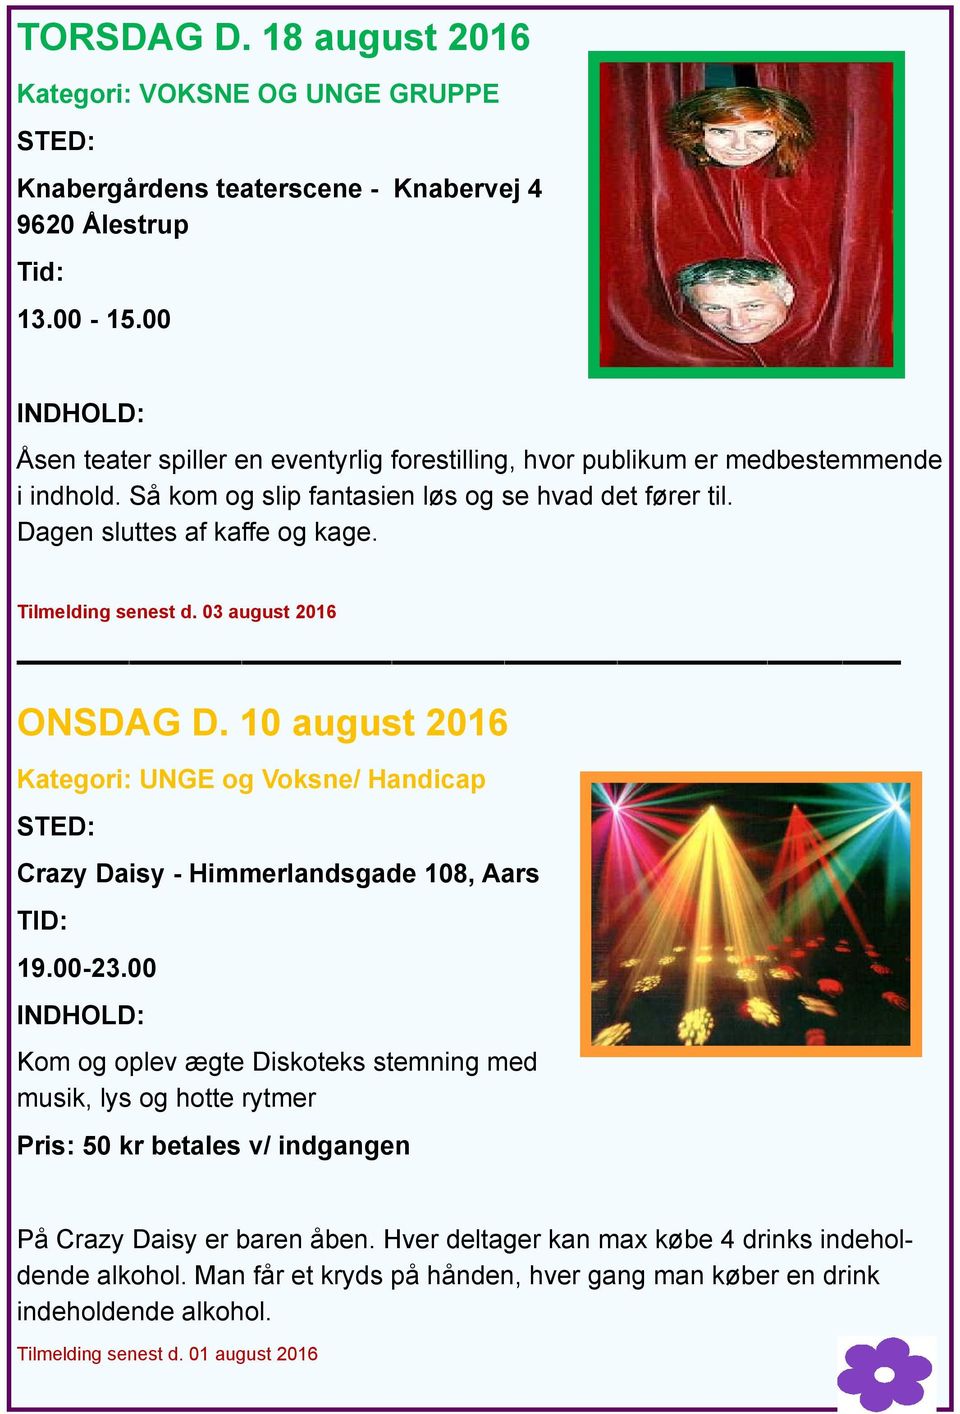 Tilmelding senest d. 03 august 2016 ONSDAG D. 10 august 2016 Kategori: UNGE og Voksne/ Handicap Crazy Daisy - Himmerlandsgade 108, Aars 19.00-23.